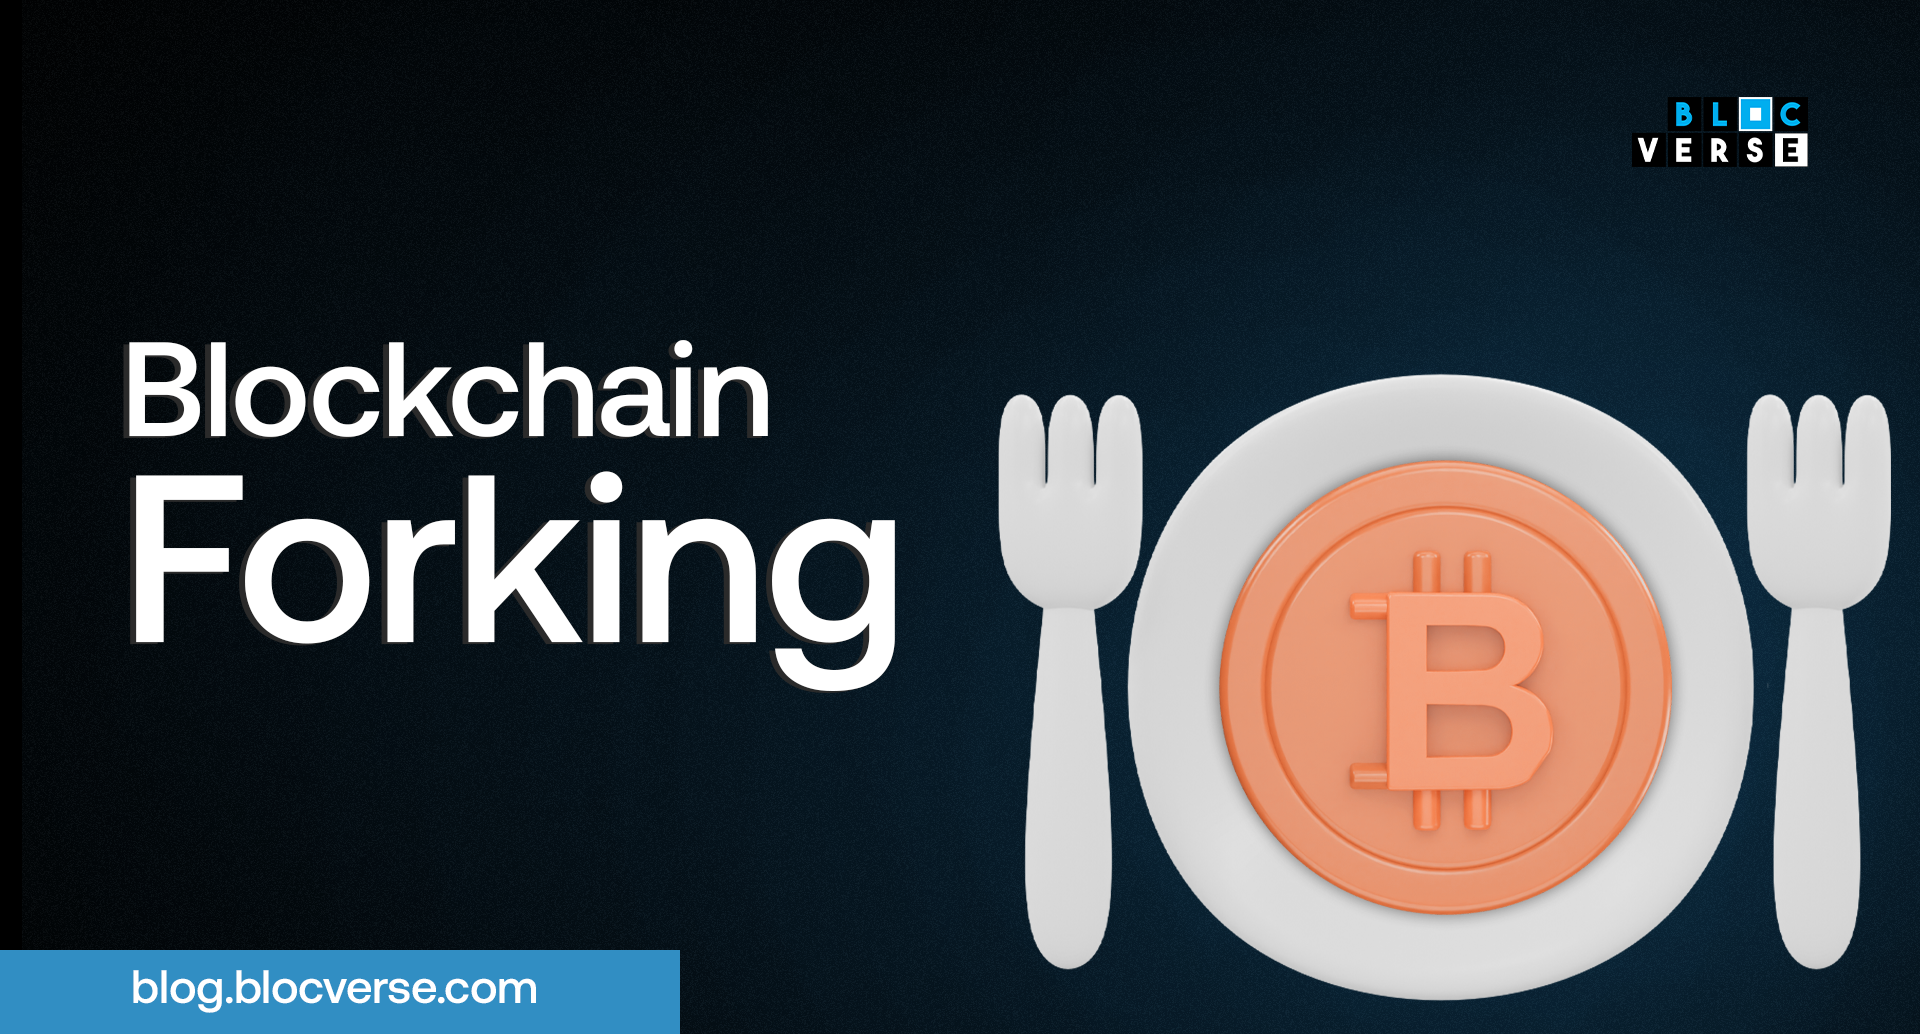 Blockchain forking